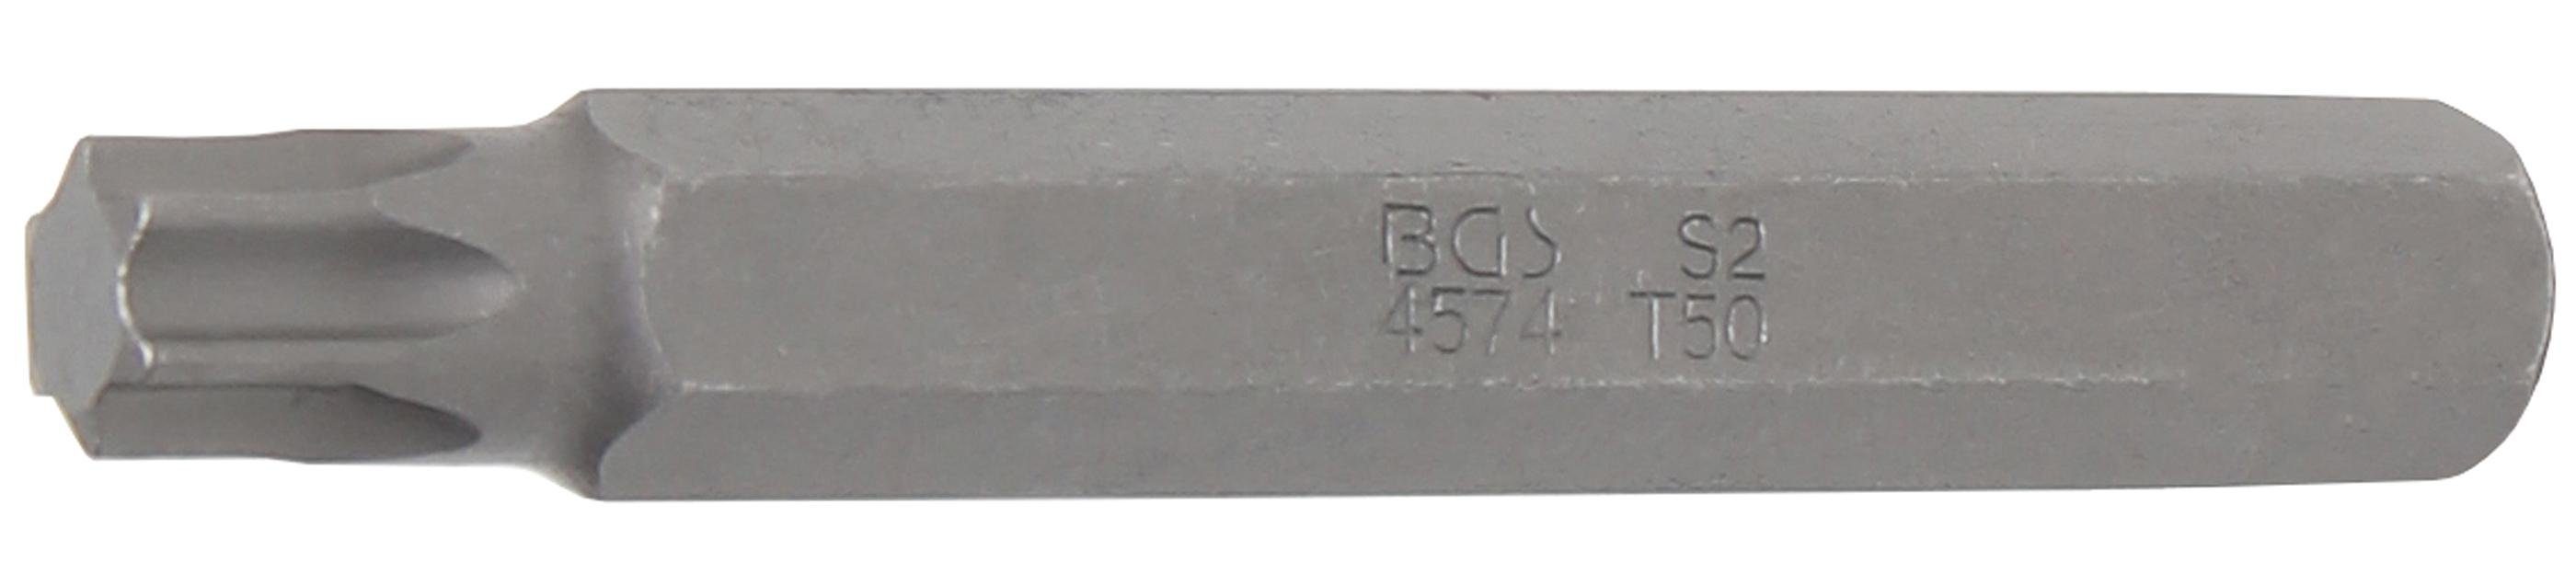 Antrieb Länge T-Profil Außensechskant 10 technic 75 mm mm, Bit, (für Torx) Bit-Schraubendreher T50 (3/8), BGS